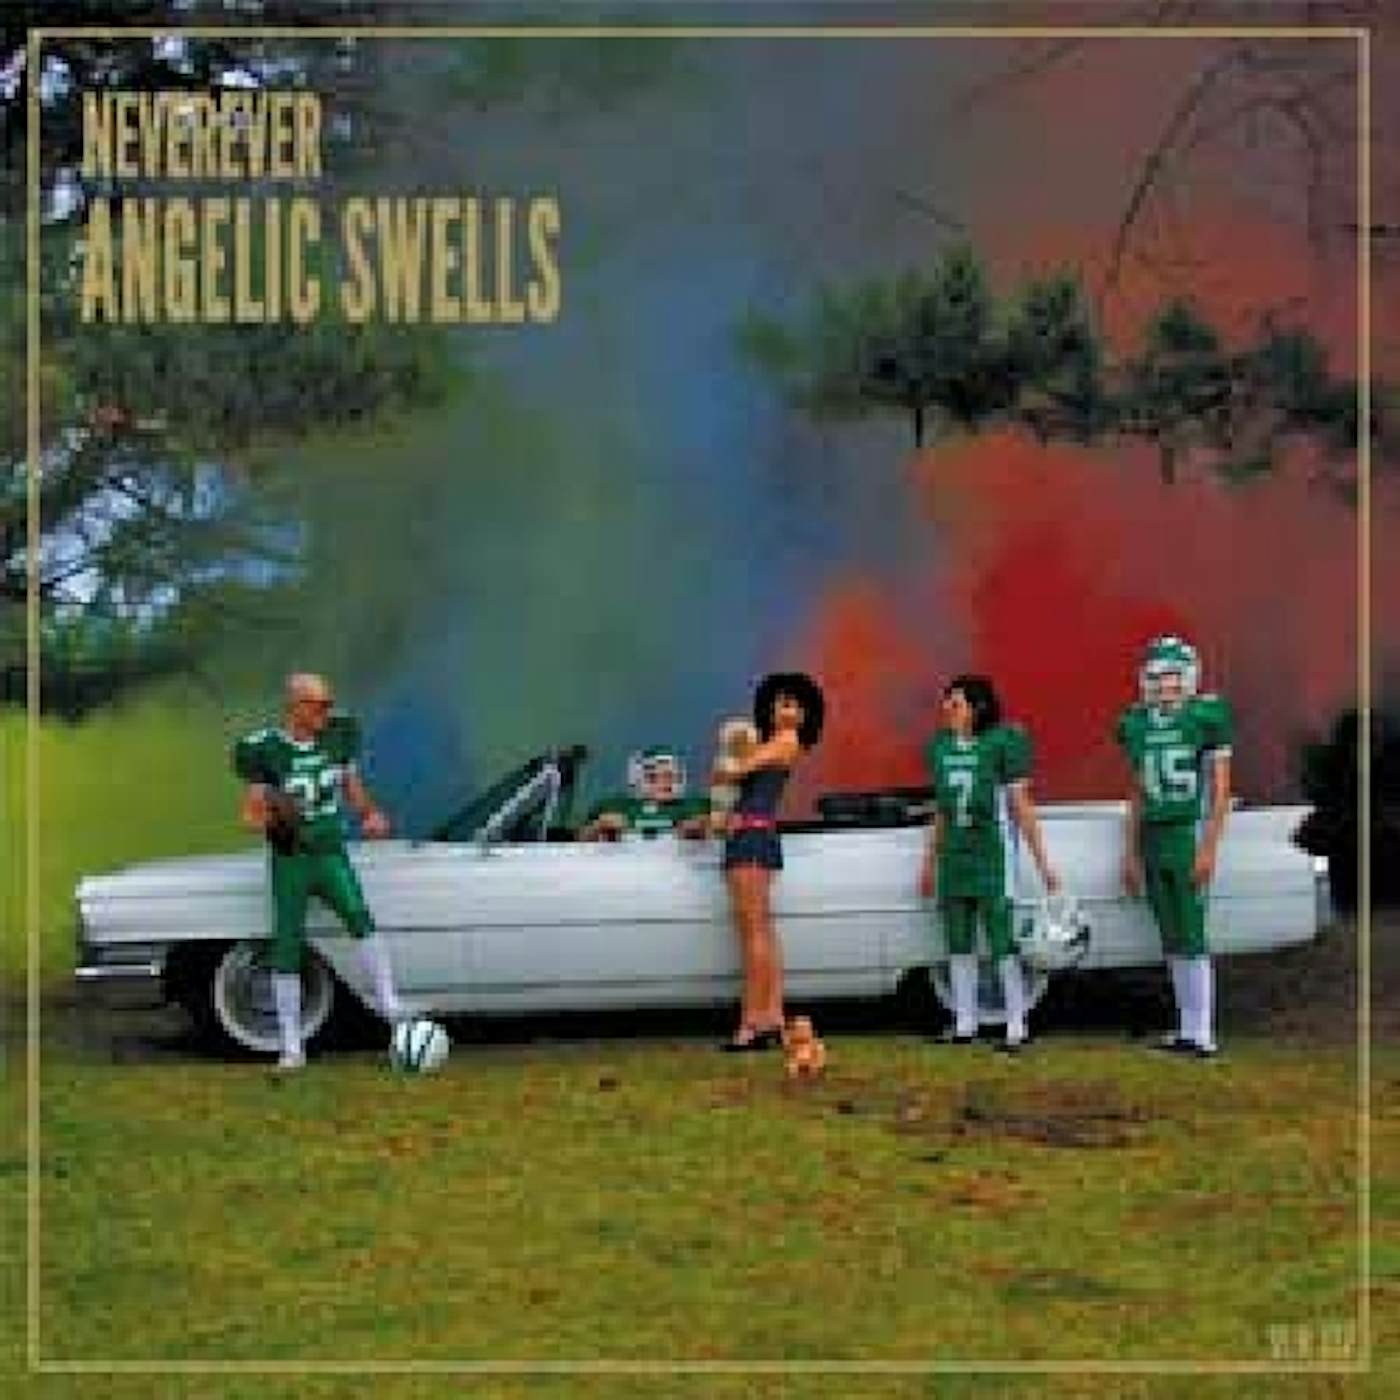 Neverever Angelic Swells Vinyl Record